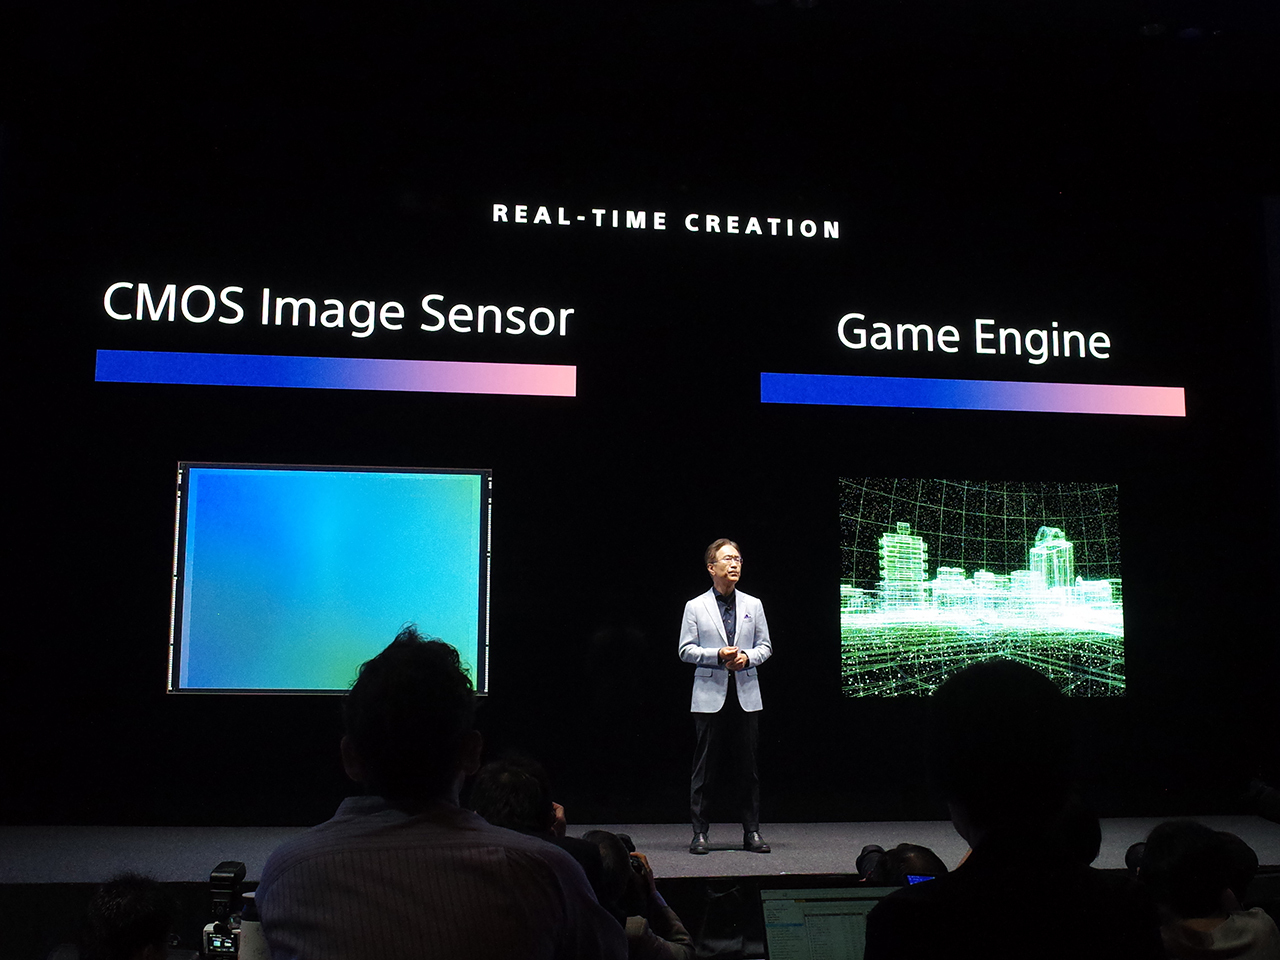 2つのクリエイションテクノロジーとして紹介した「CMOSイメージセンサー」と「ゲームエンジン」